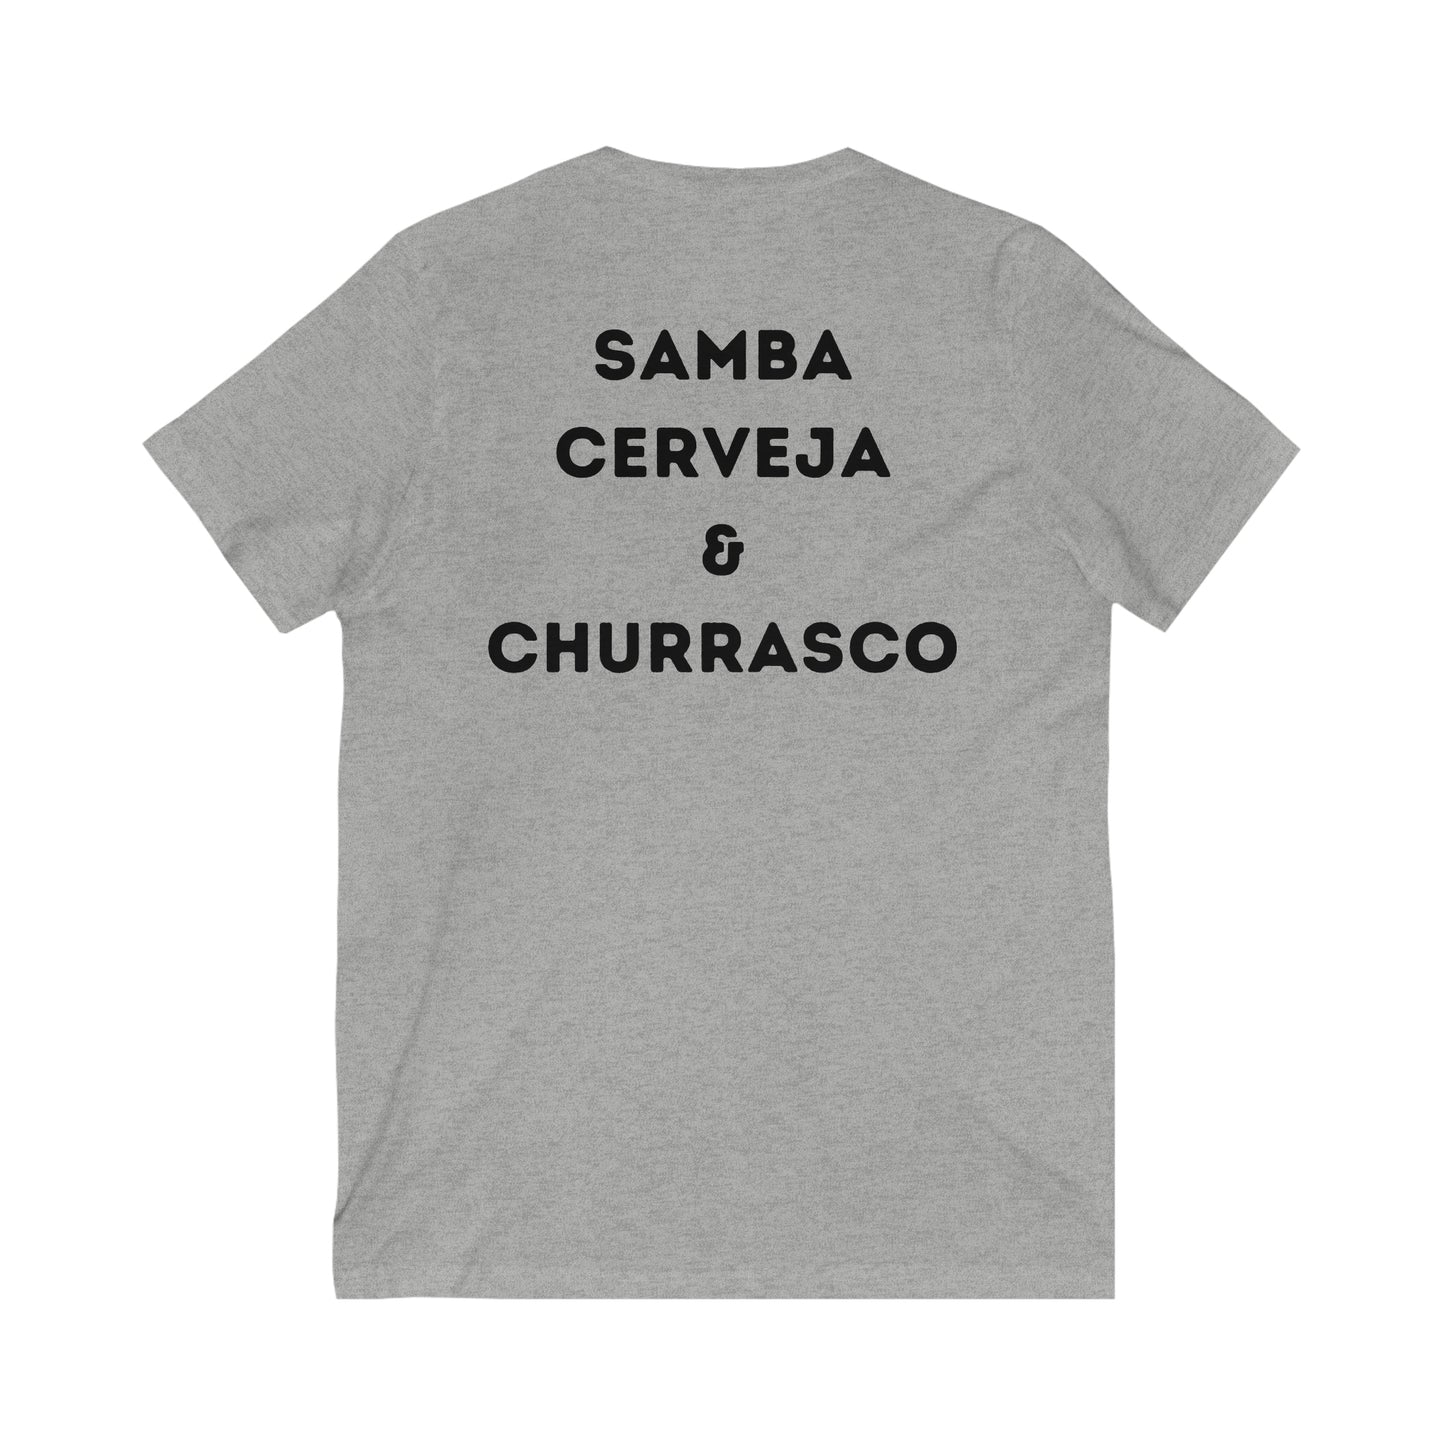 Powered By Samba Cerveja and Churrasco V Neck Brazilian Tee